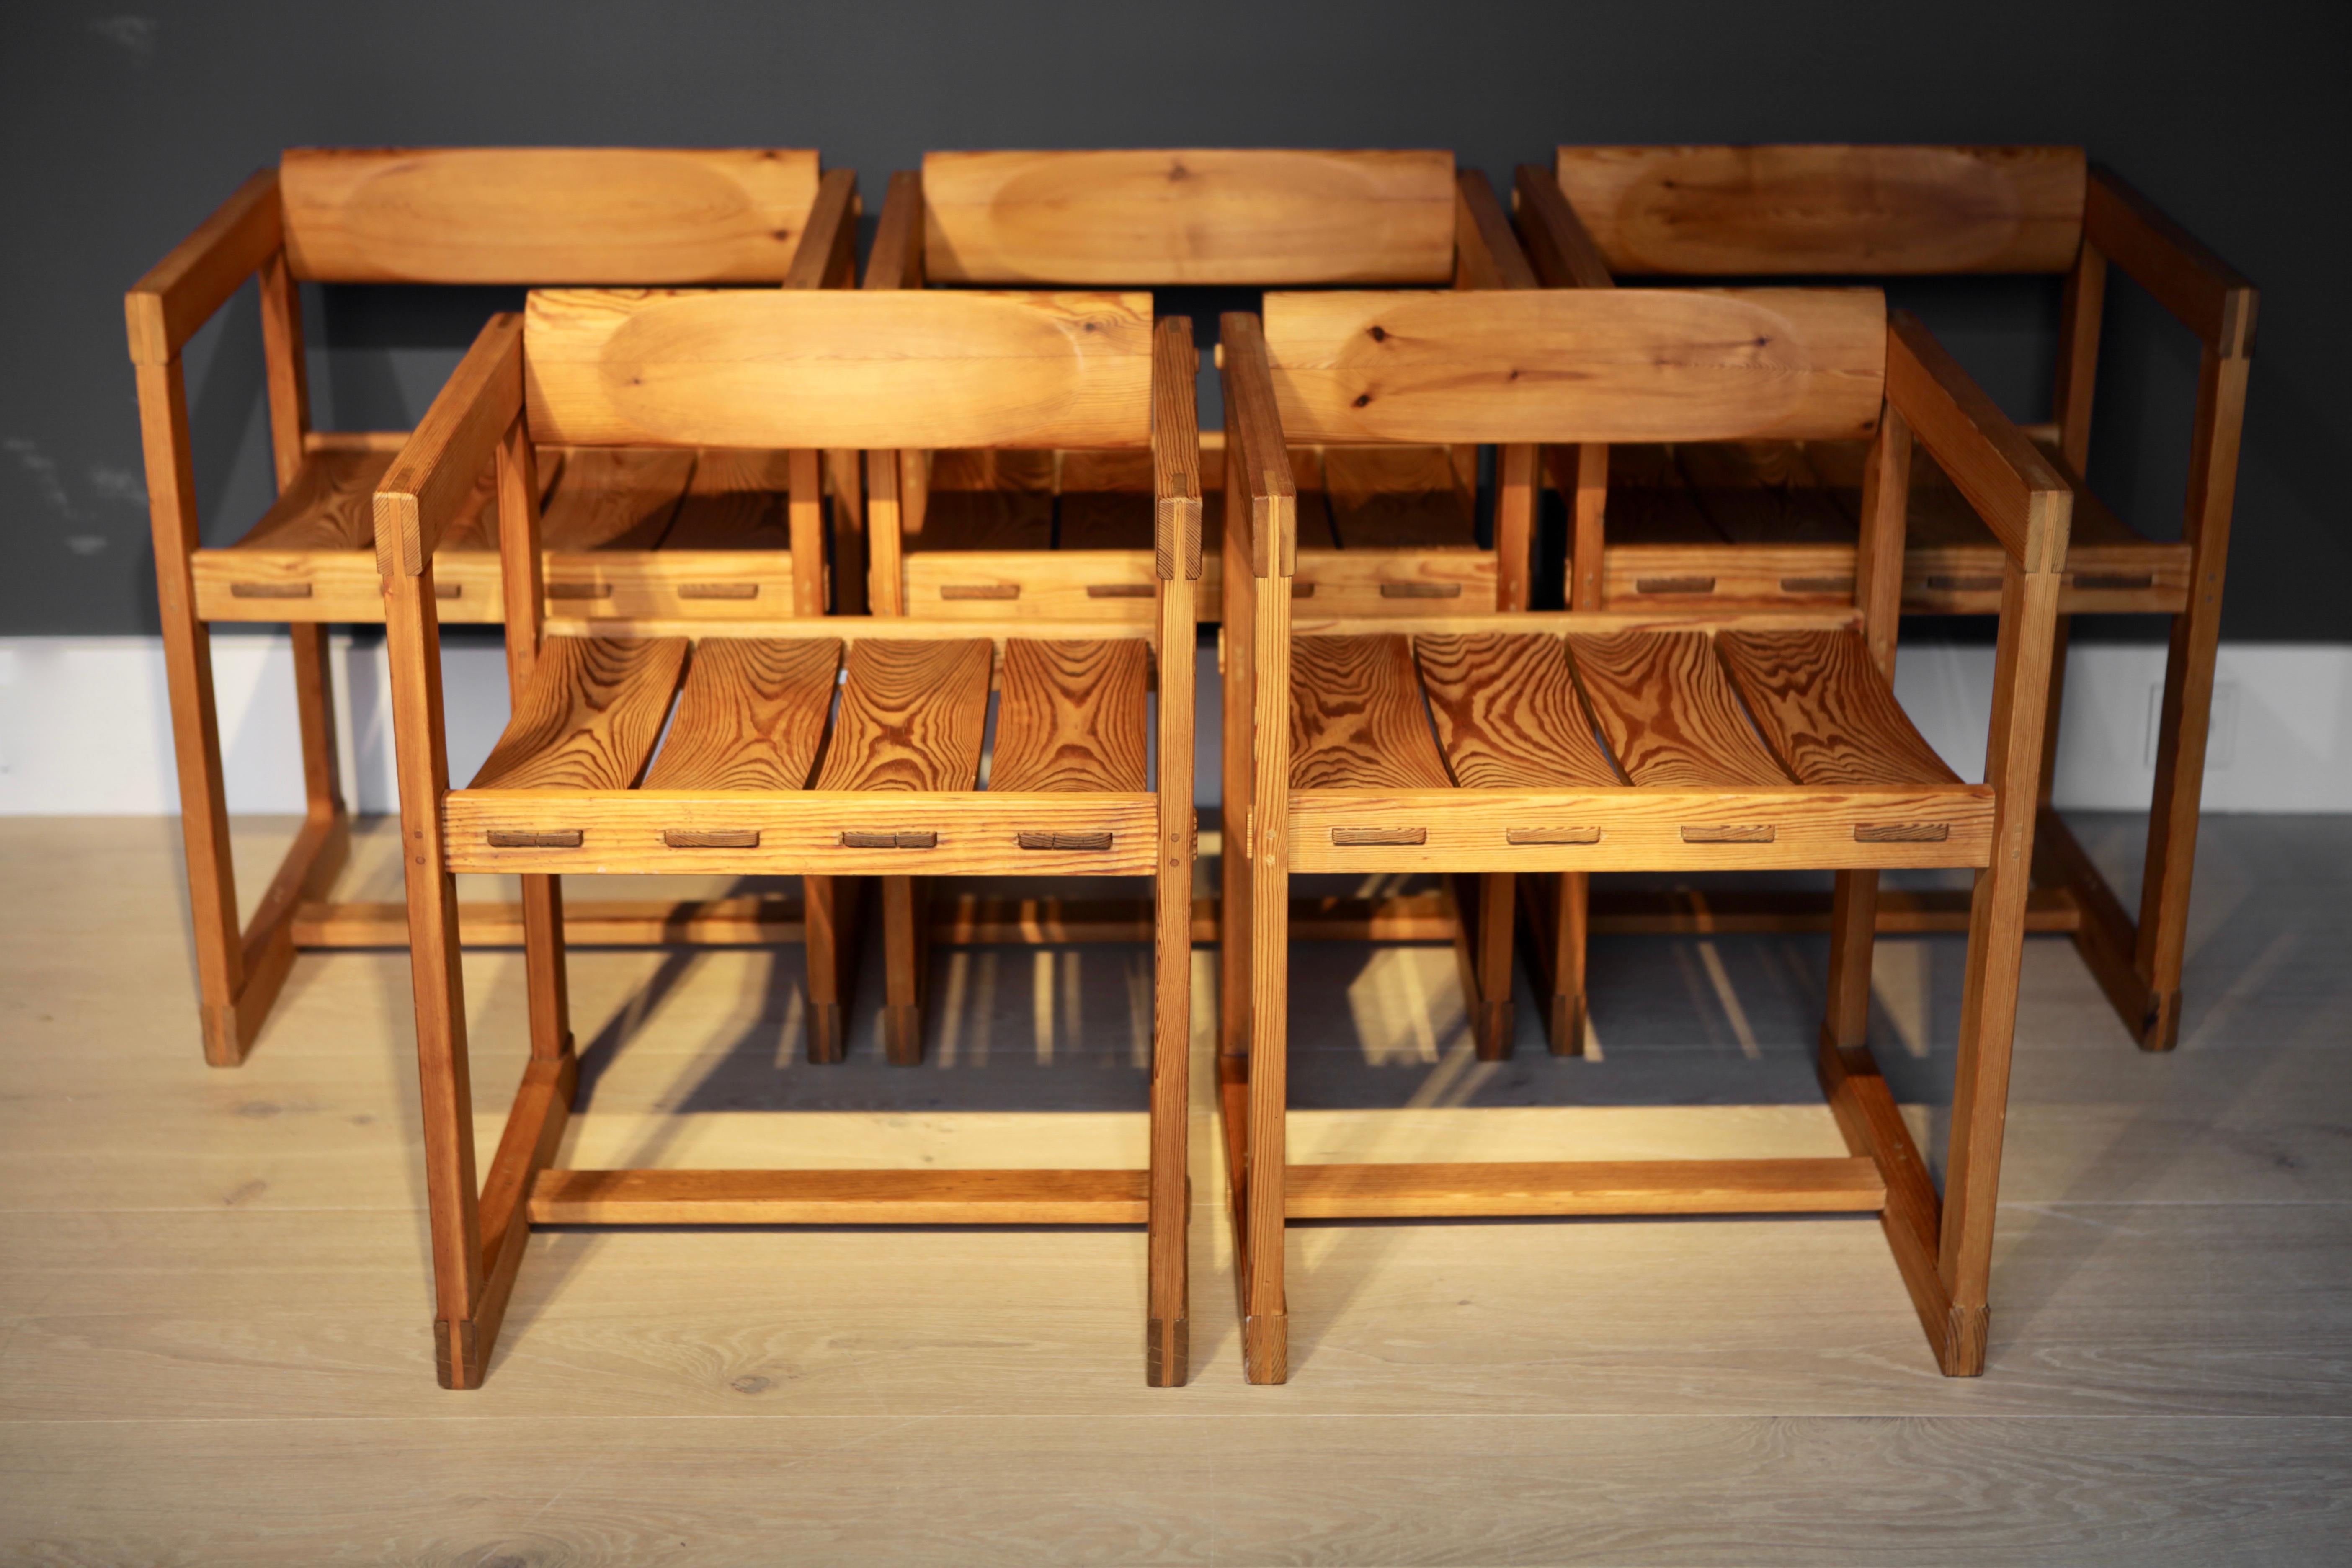 Un ensemble de 5 rares chaises de salle à manger avec accoudoirs, conçues par Edvin Helseth en 1965 en Norvège et fabriquées par Trybo.
Les chaises sont fabriquées en pin massif avec un dossier basculant monté pour un grand confort.
Parfait état